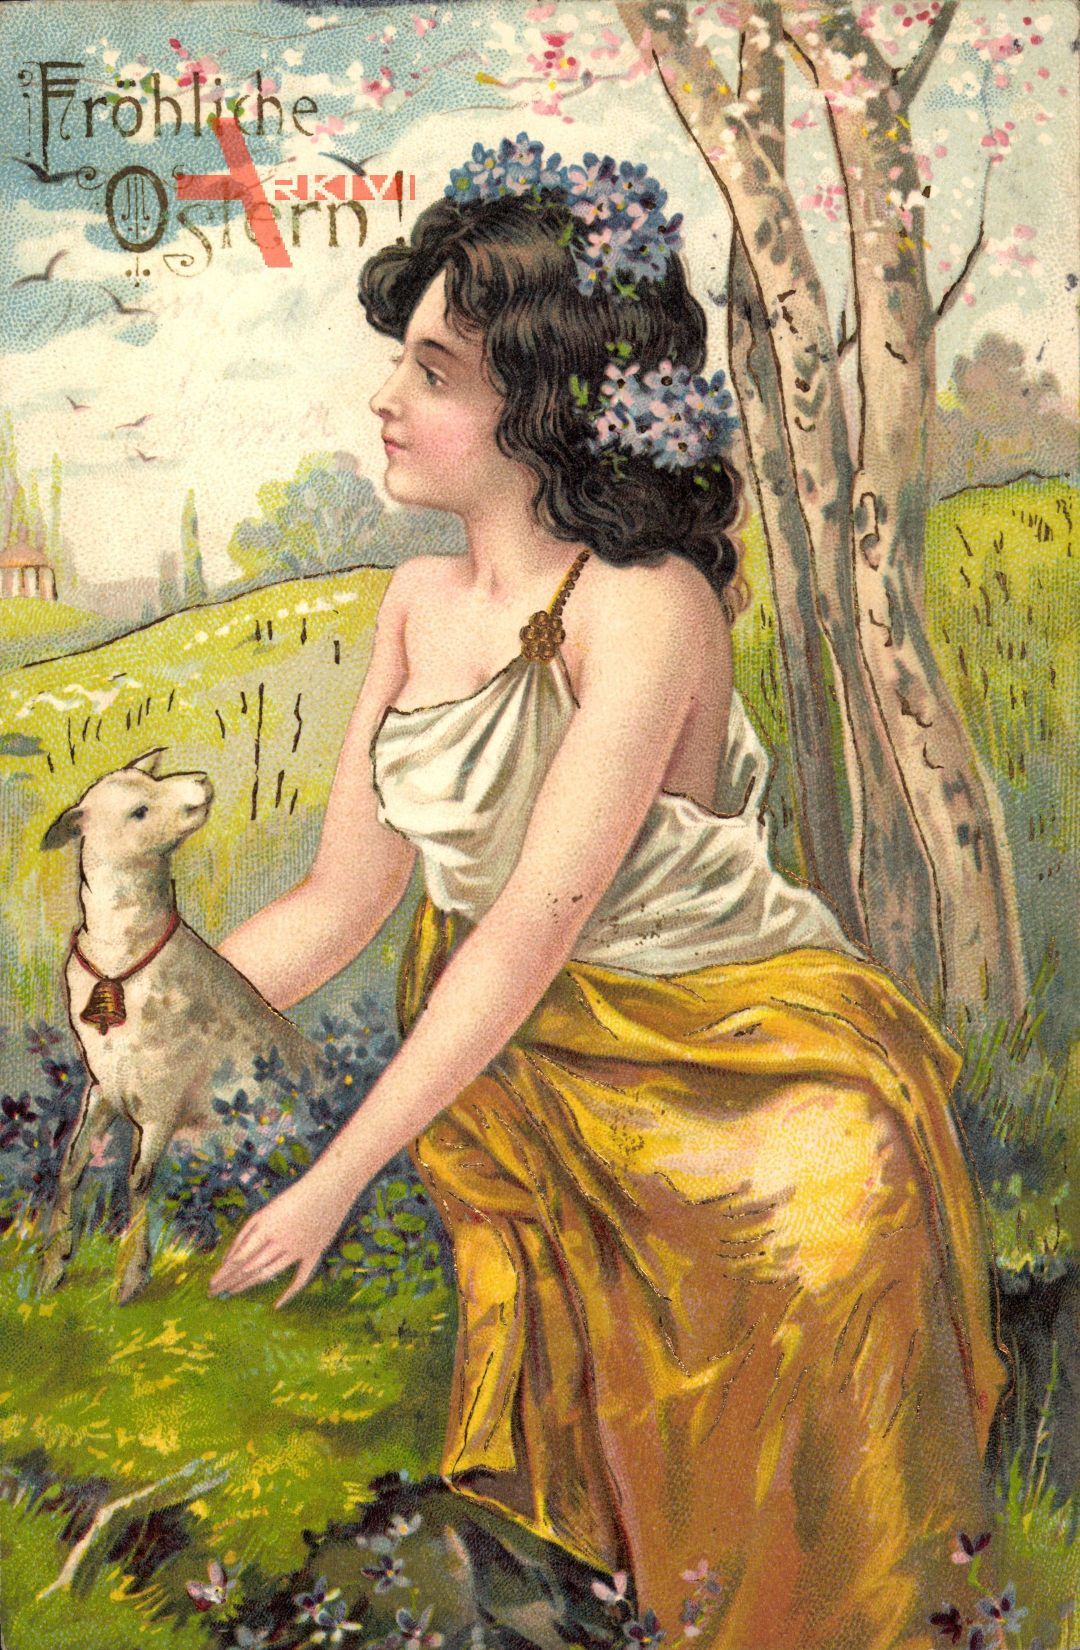 Fröhliche Ostern, Frau mit Blumen im Haar, Lamm, Wiese